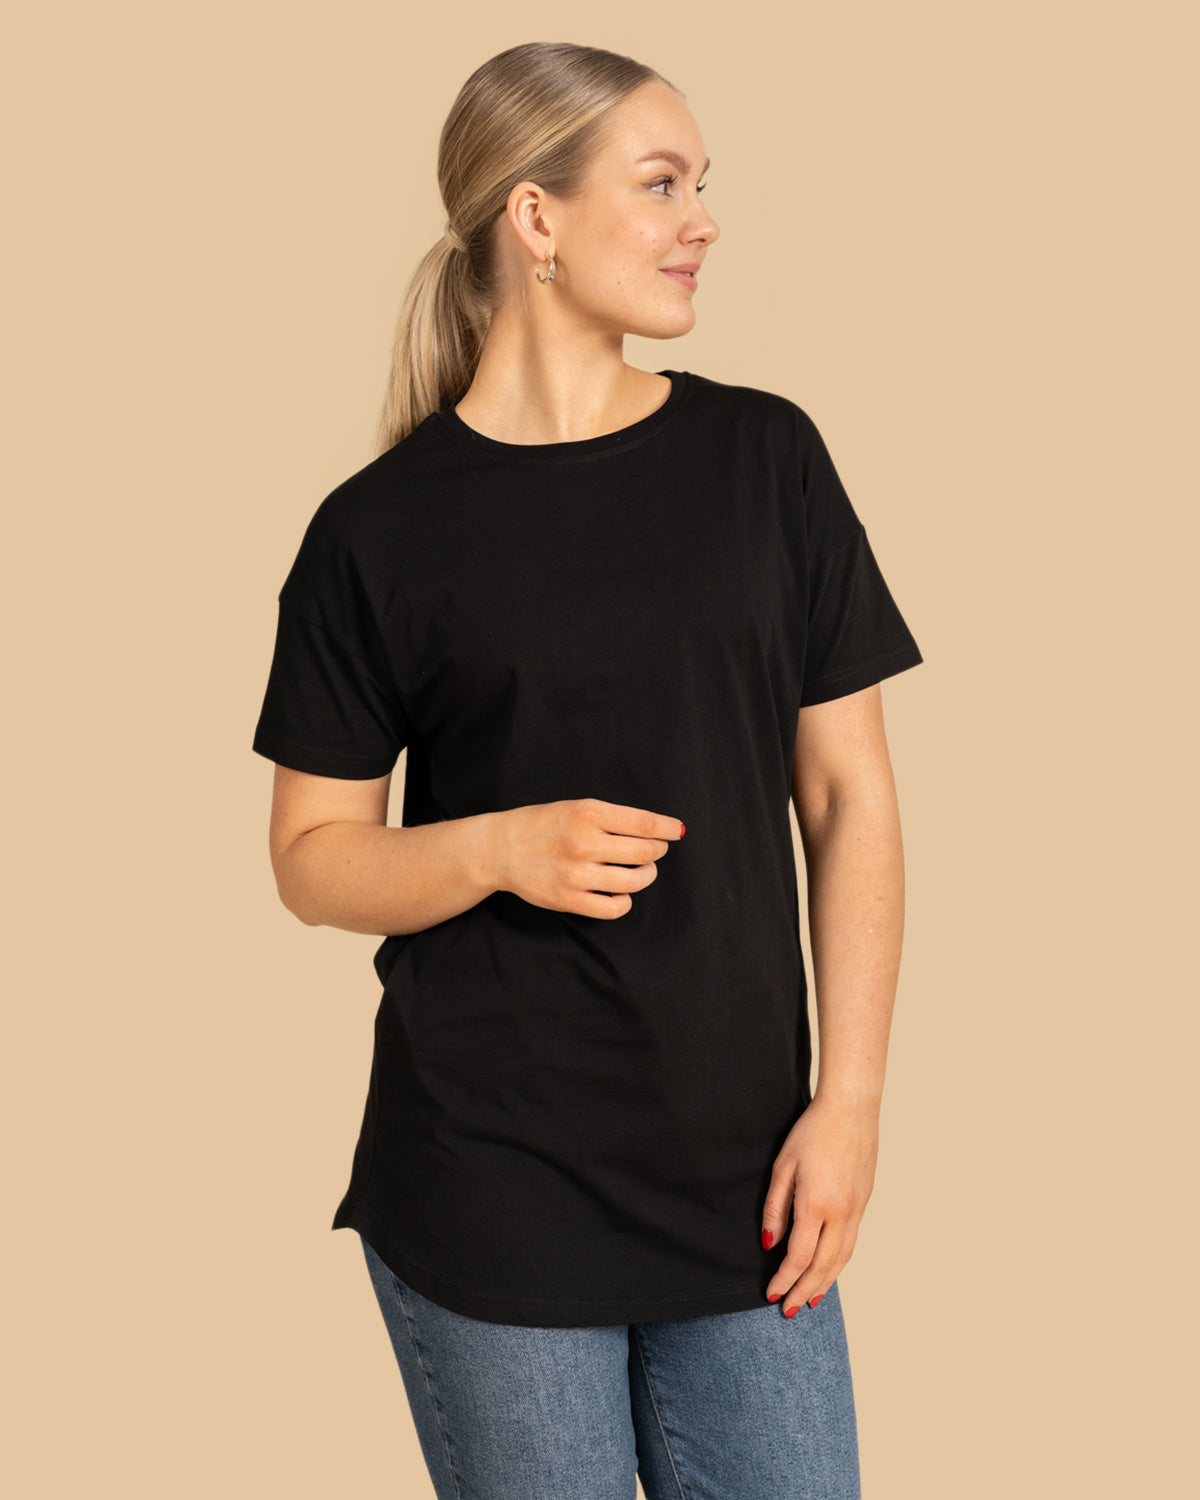 Musta Noki t-paita pitkä RIVA Clothing.